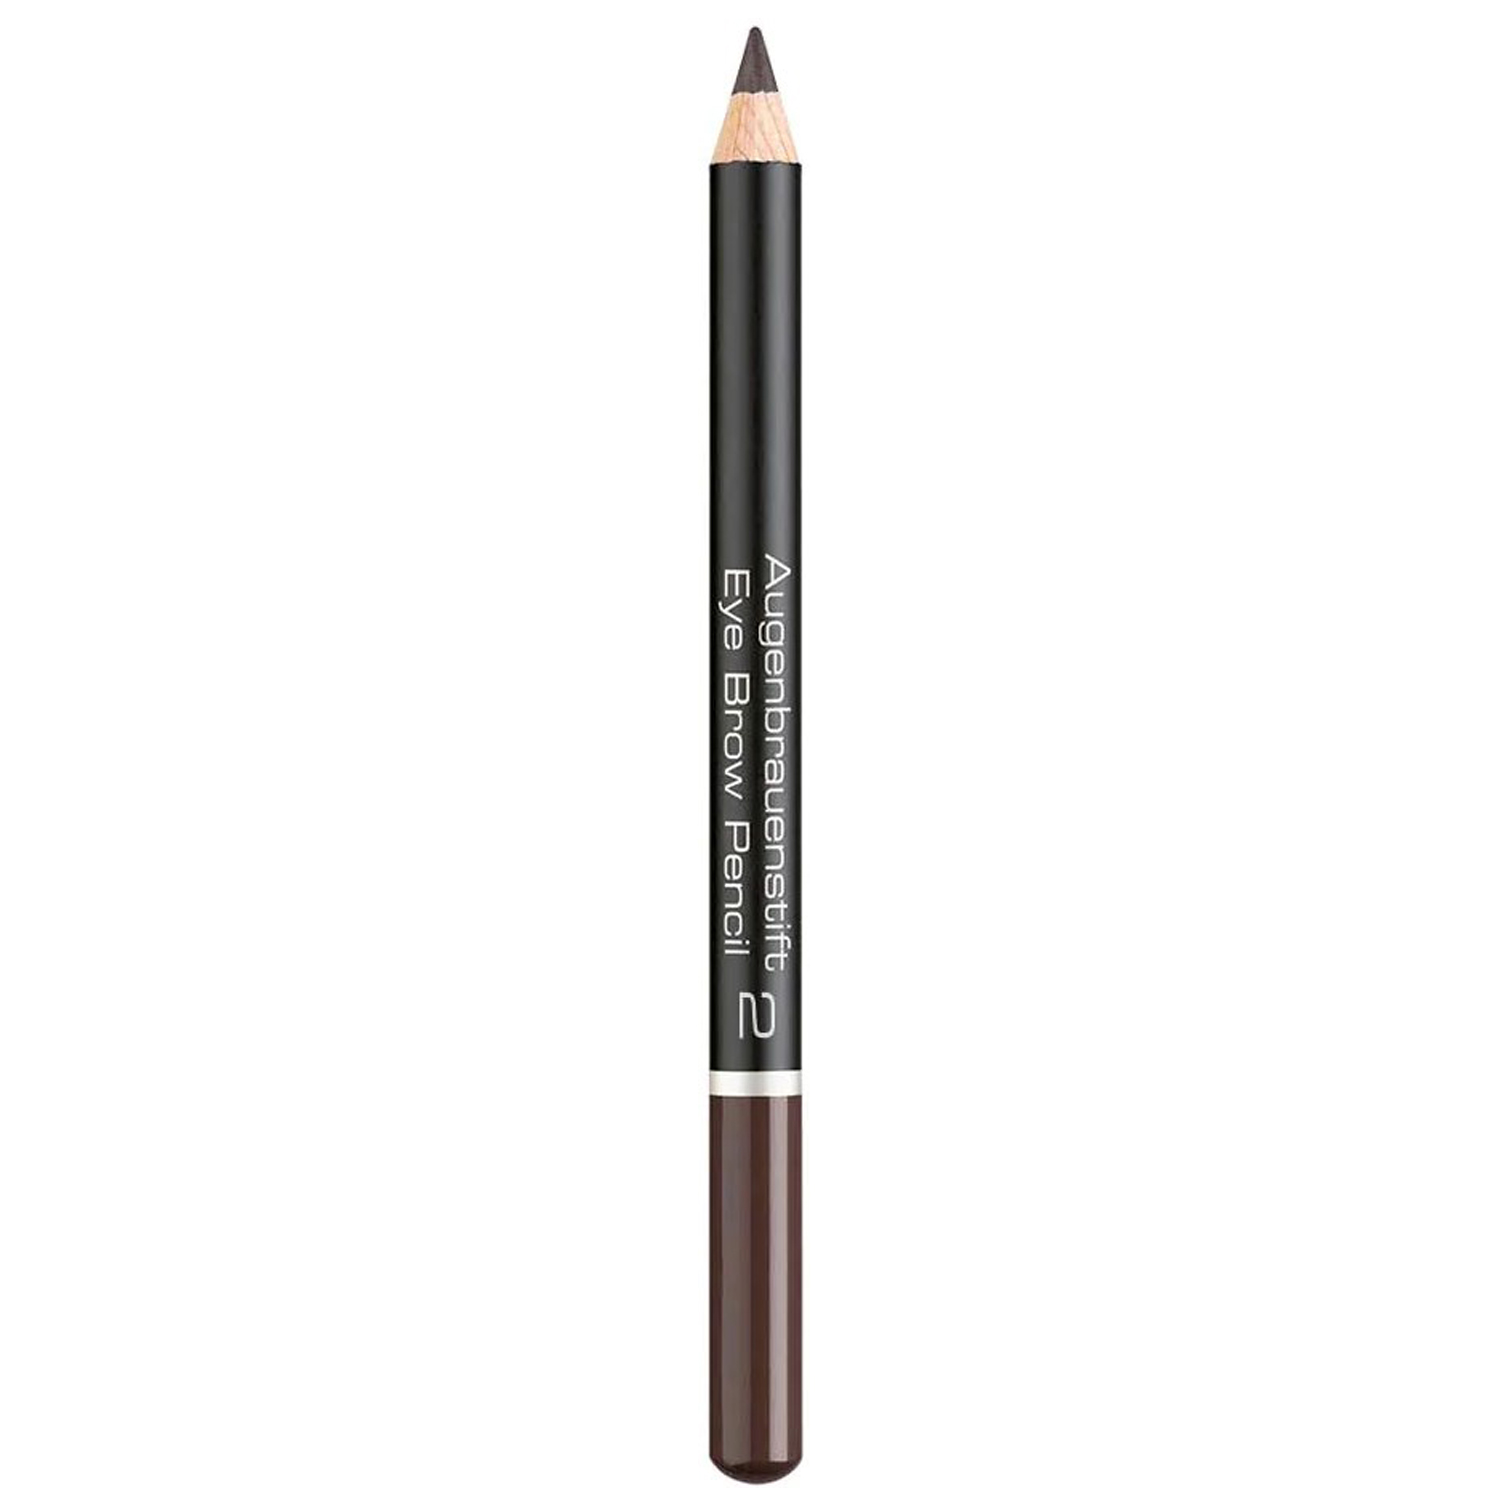 Карандаш для бровей Artdeco Eye Brow Pencil Intensive Brown тон 2, 1.1 г (73394) - фото 1